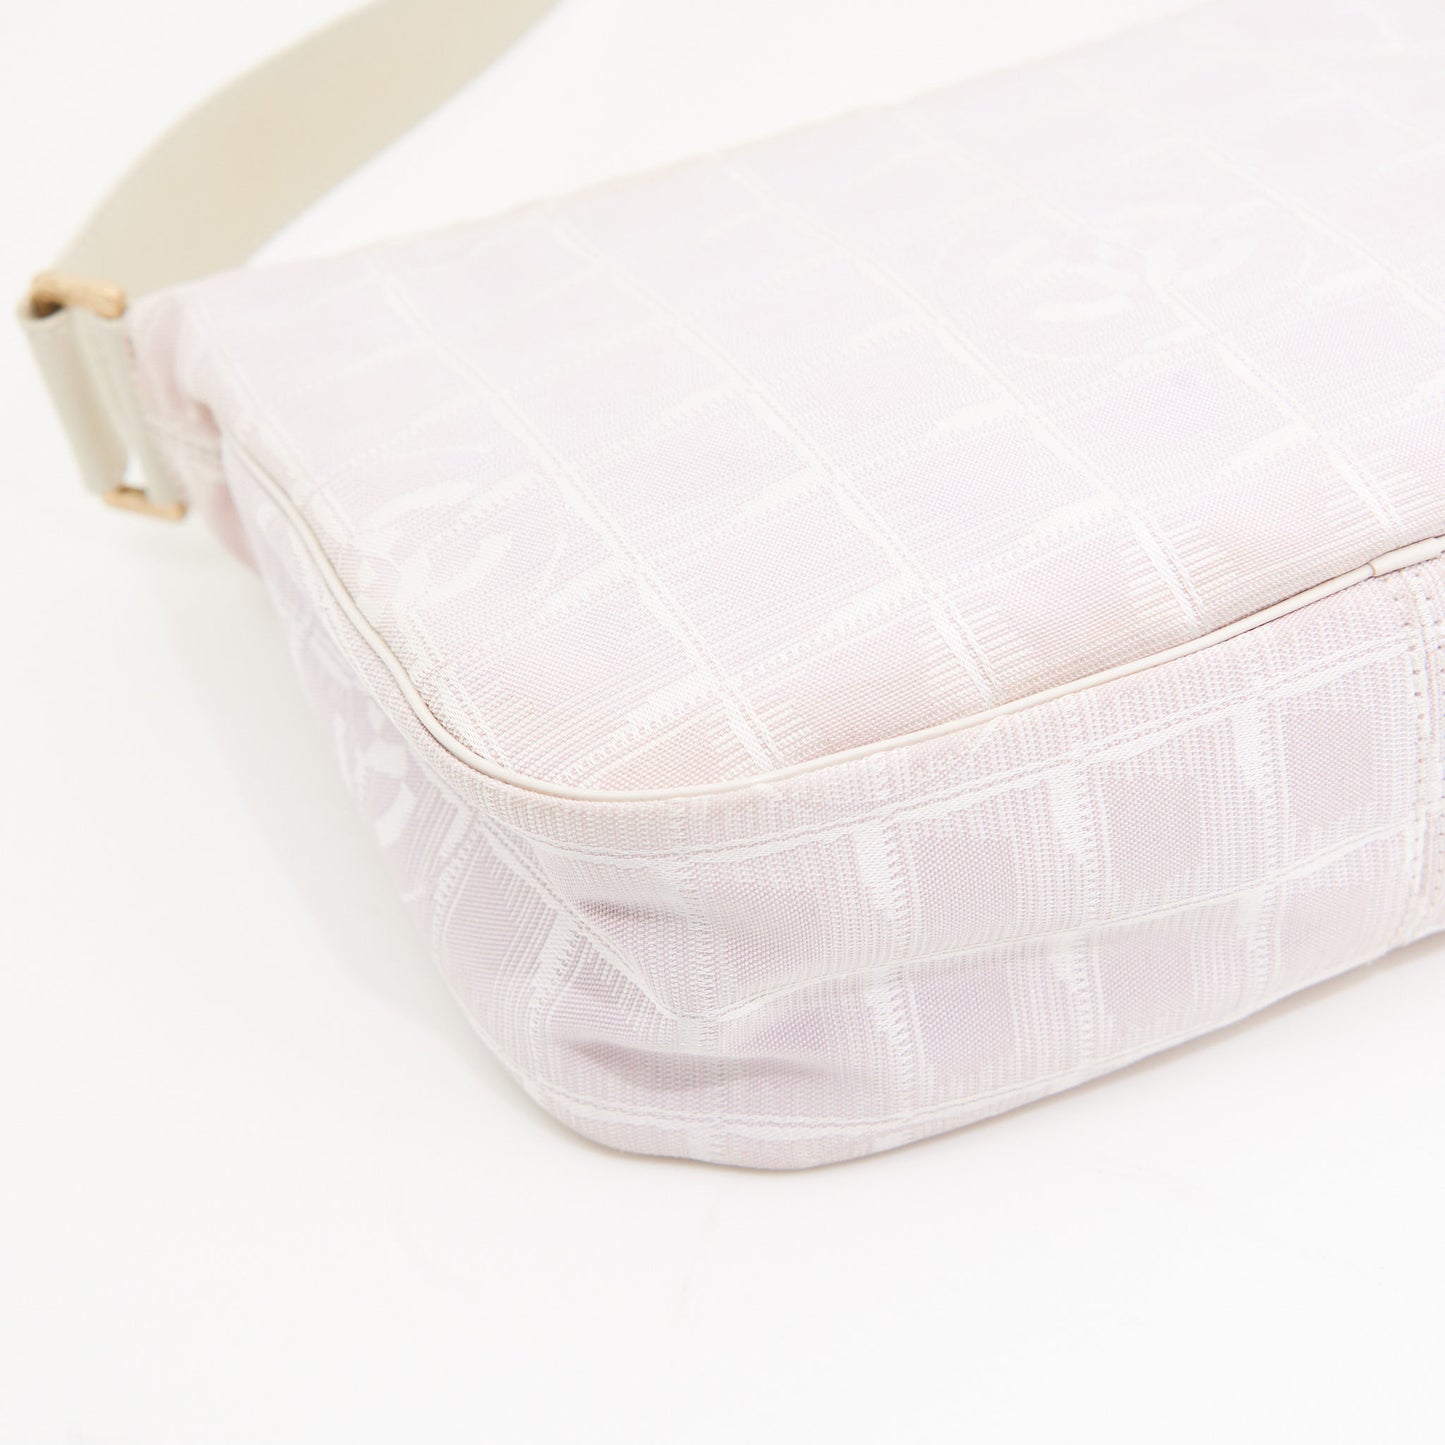 Chanel Canvas Shoulder Bag in Pink GHW